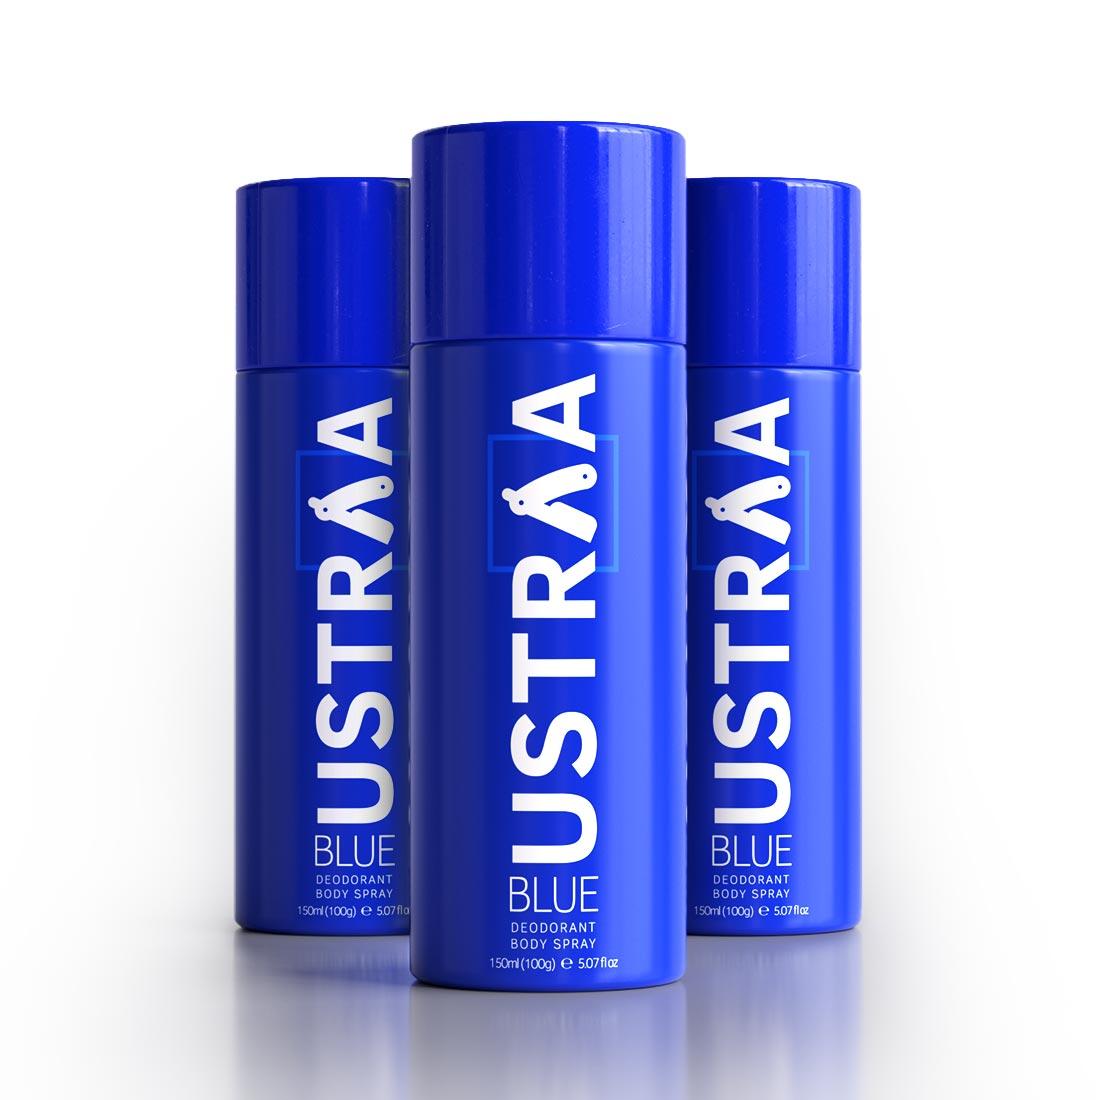 Ustraa Blue Deodorant Body Spray For Men (150ml) - Long Lasting Fragrance (Set of 3)